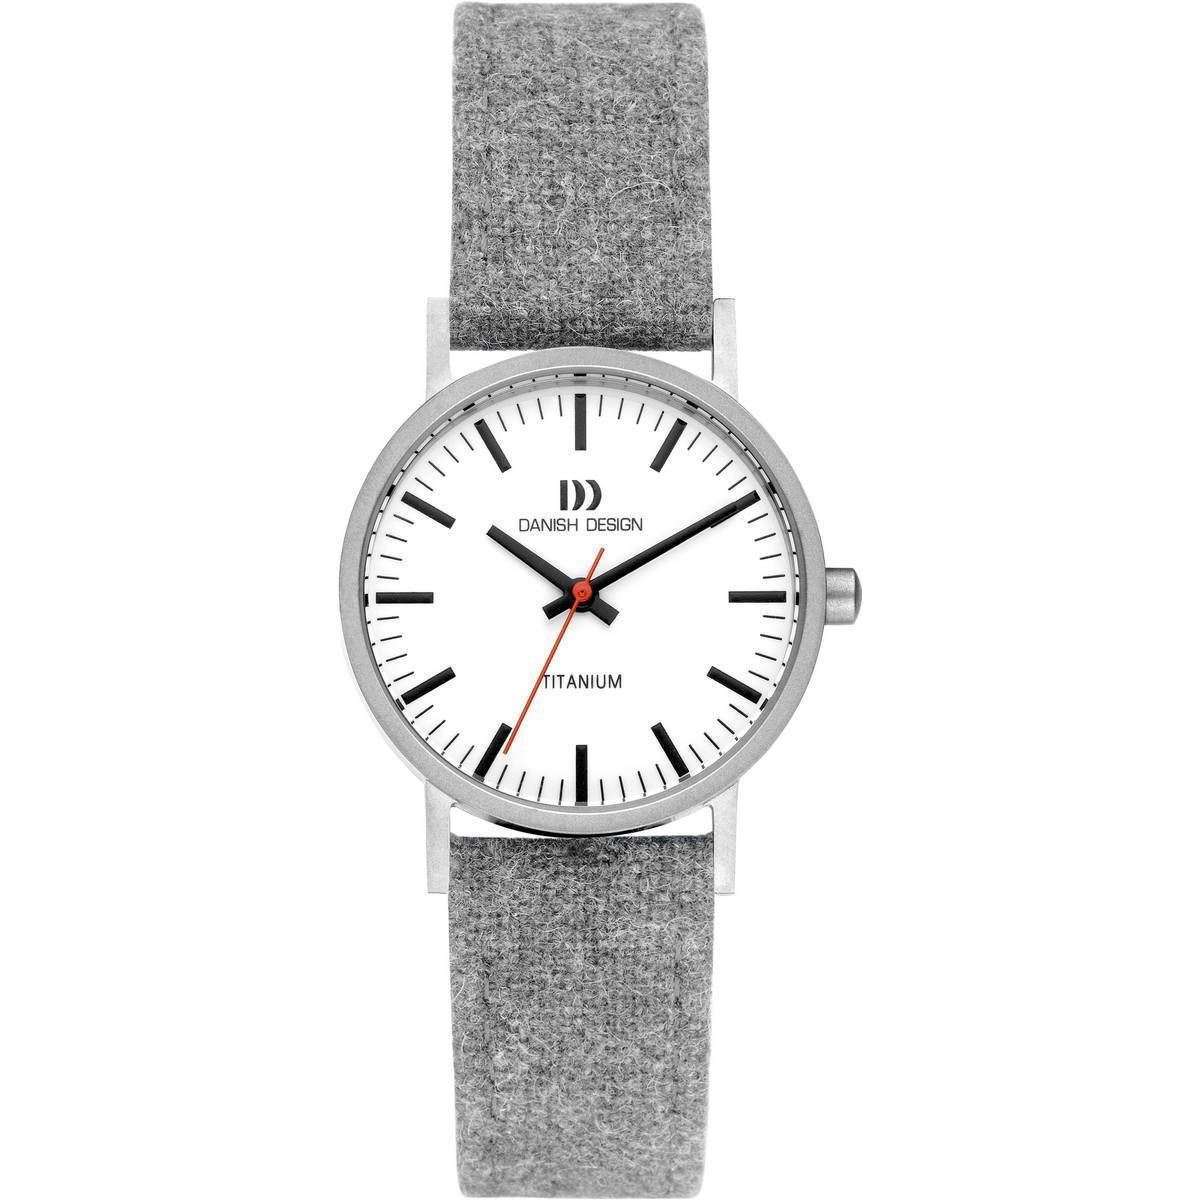 Danish Design Rhine Vegan Watch - Light Grey/White